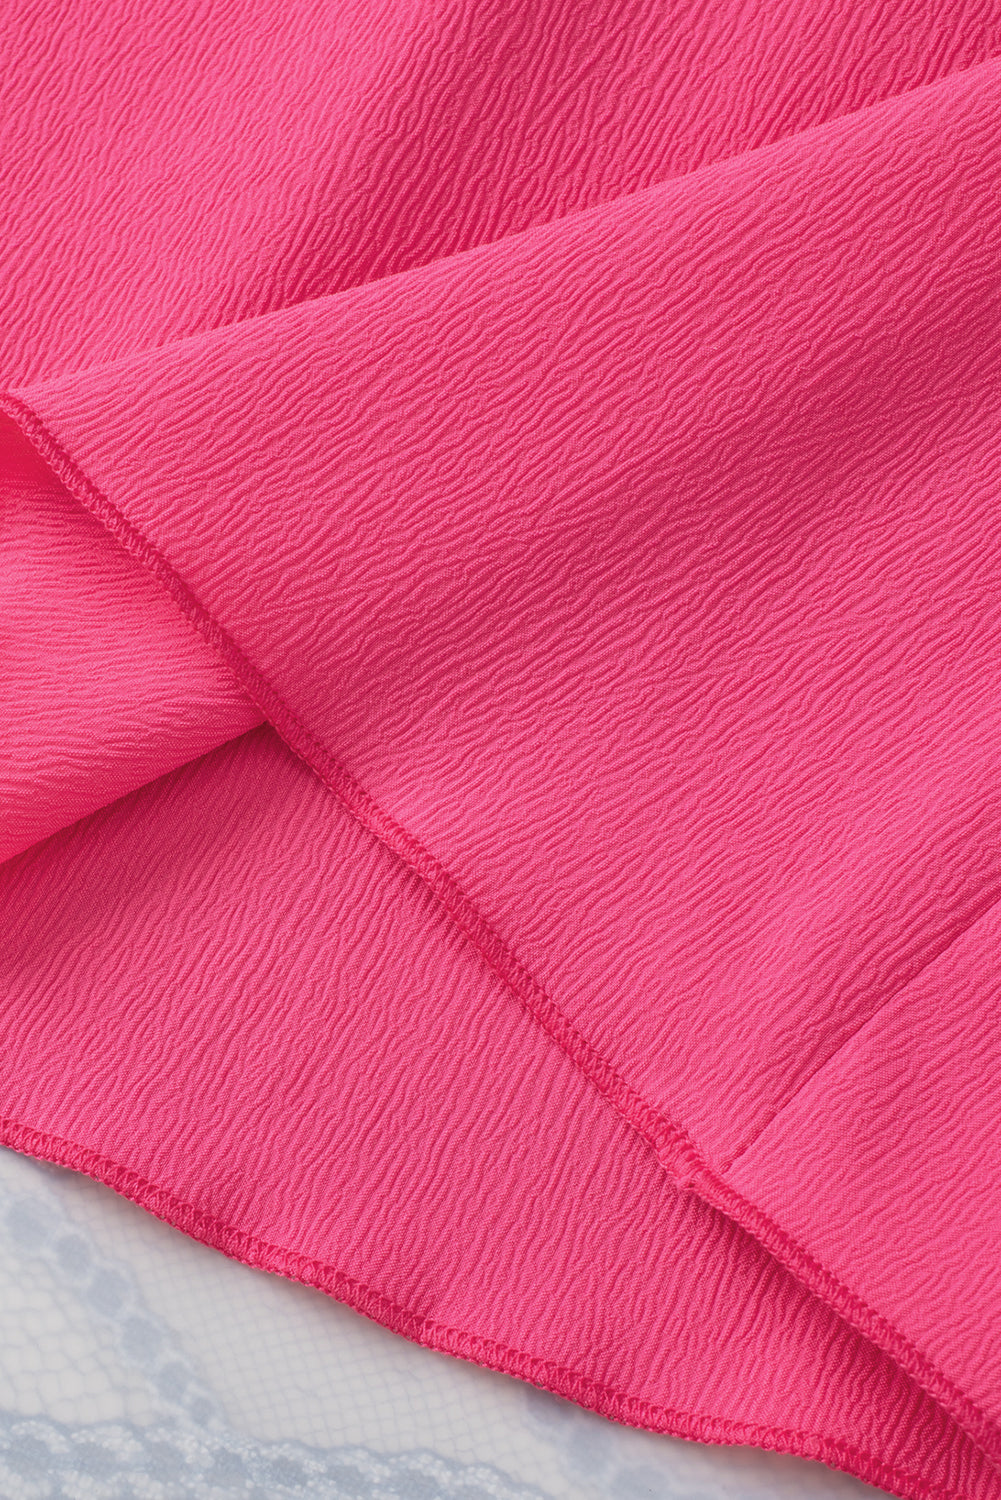 Rožnato rdeča dvobarvna bluza z naborkanimi rokavi